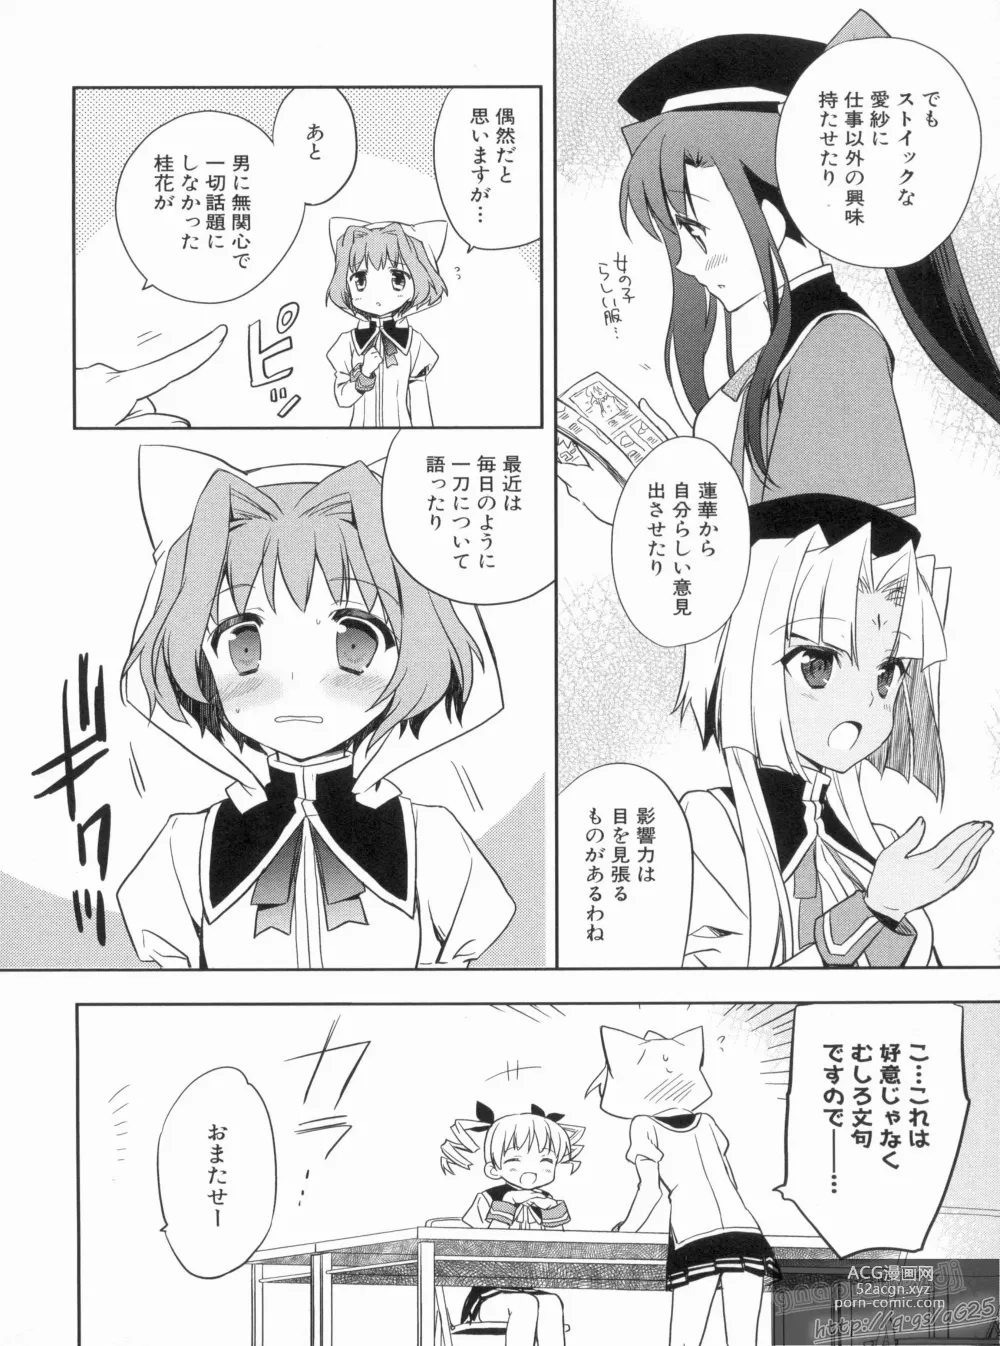 Page 16 of manga Shin Koihime Musou Gaishi Saiten VOL.3